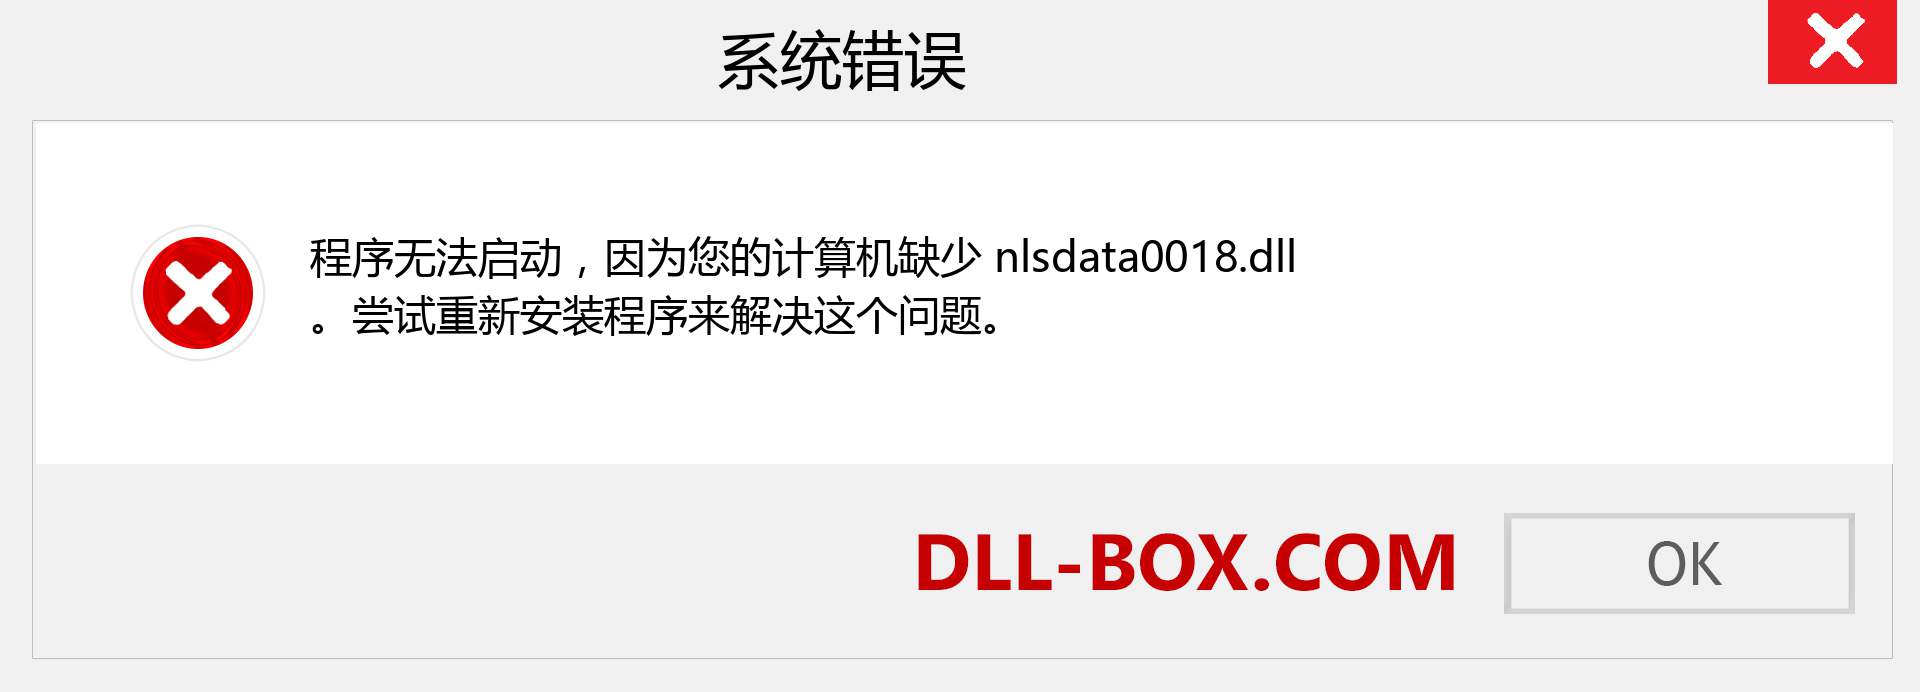 nlsdata0018.dll 文件丢失？。 适用于 Windows 7、8、10 的下载 - 修复 Windows、照片、图像上的 nlsdata0018 dll 丢失错误